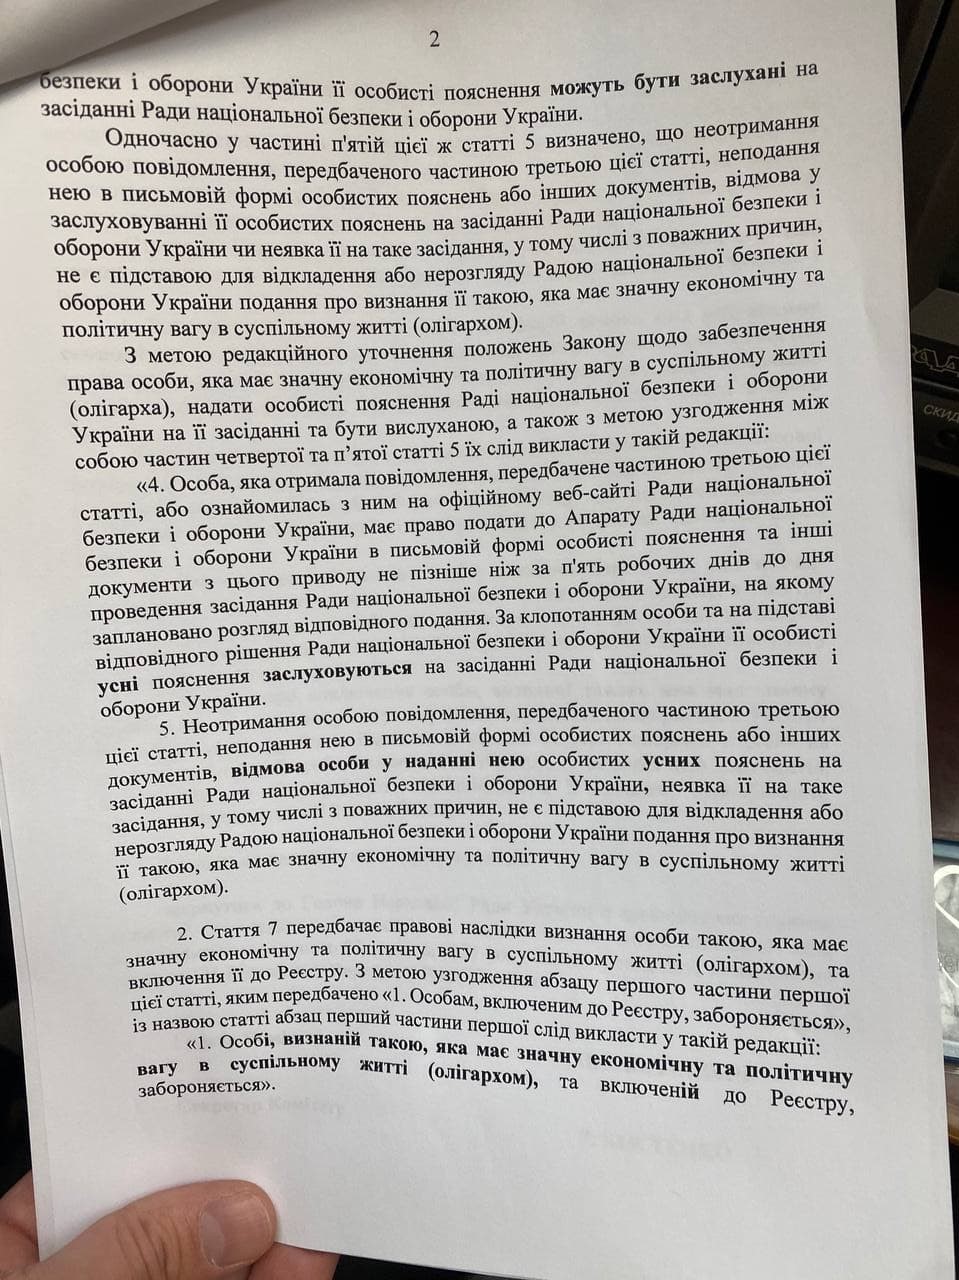 Оборонный Комитет решил, что необходимо проголосовать ряд правок к законопроекту об олигархах. Скриншот из телеграм-канала Ярослава Железняка